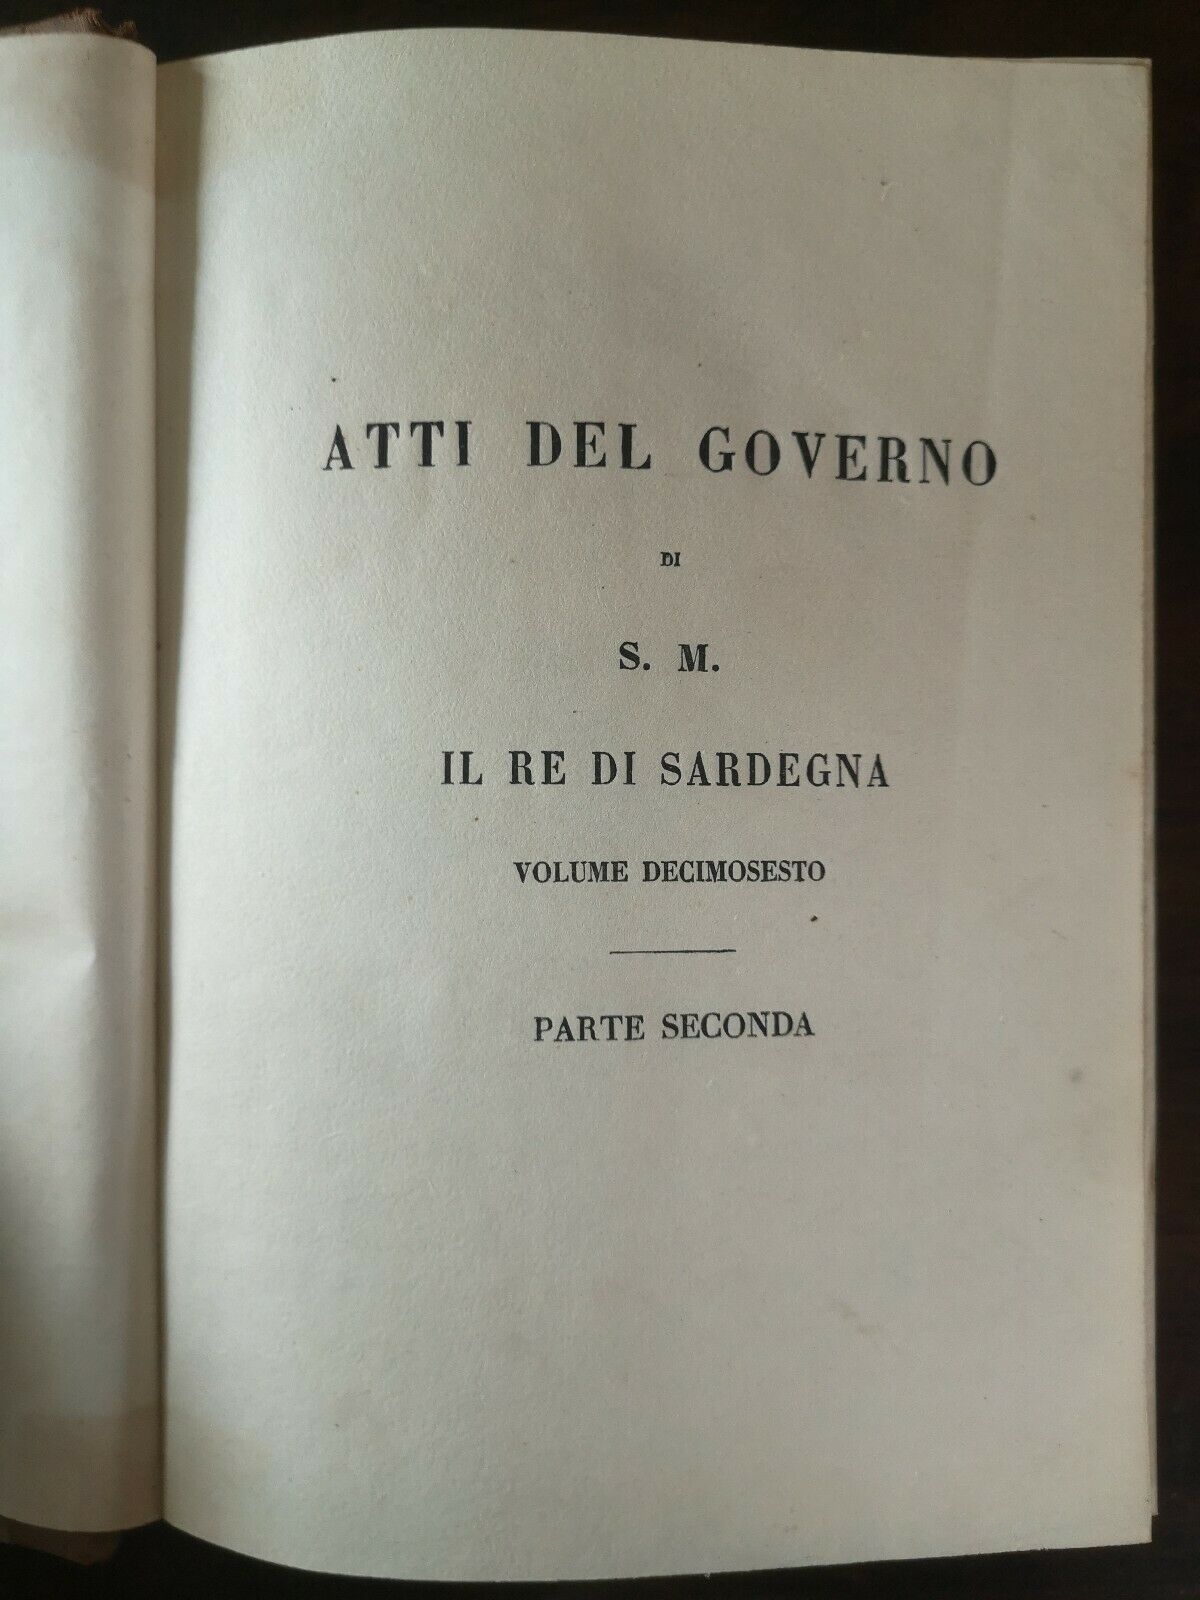 Raccolta Degli Atti Del Governo Il Re Di Sardegna Volume Decimosesto Anno 1848 Stamperia reale Torino parte prima e seconda 